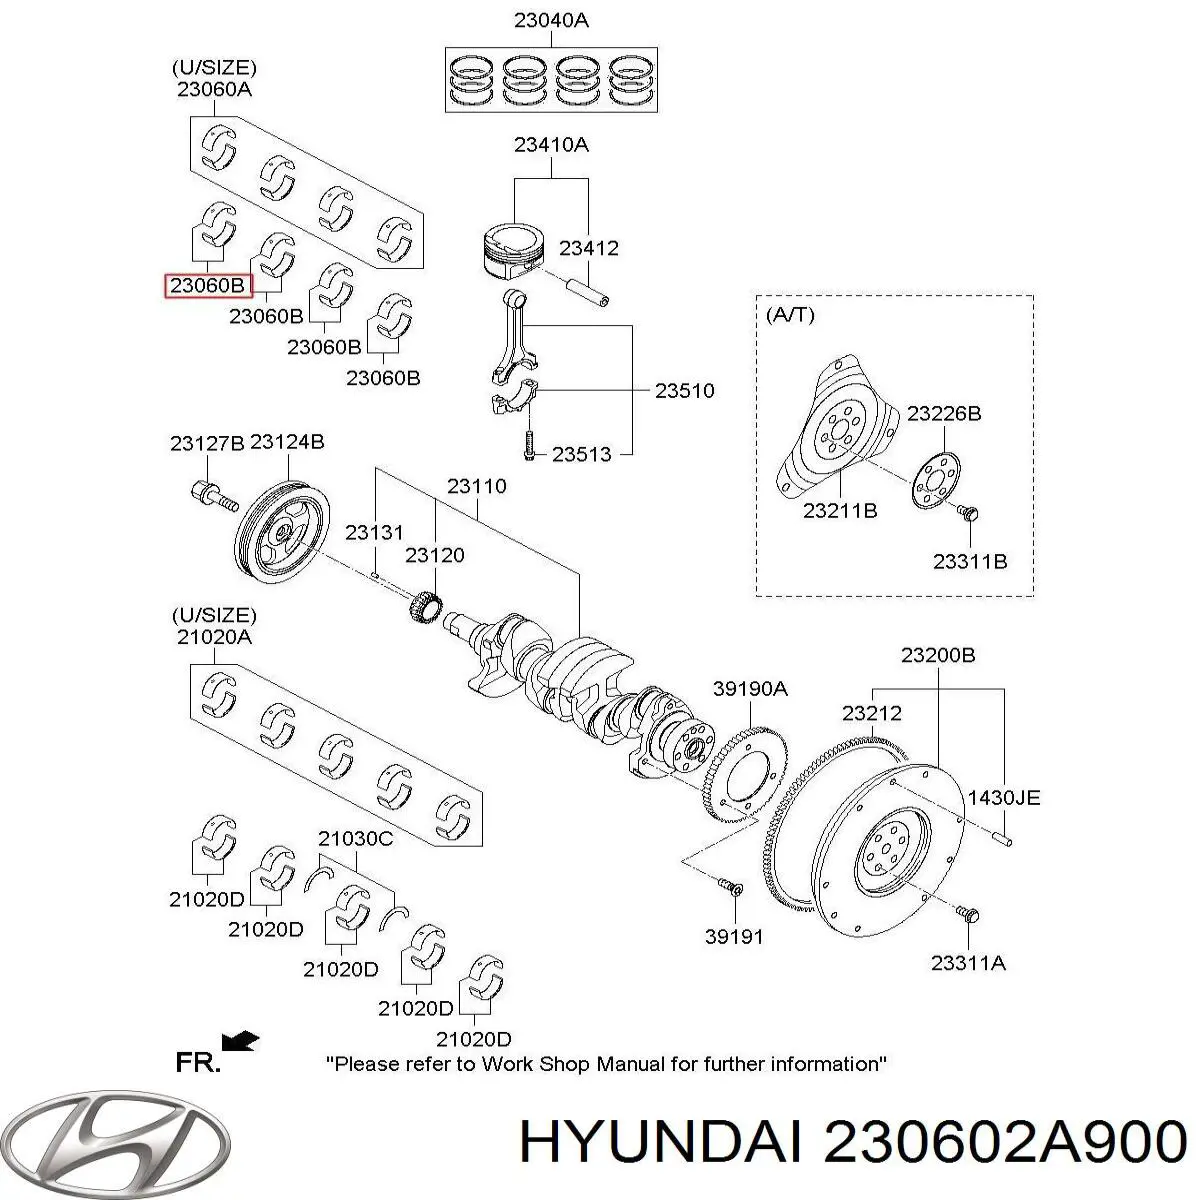 Juego de cojinetes de biela, estándar (STD) para Hyundai Accent (MC)